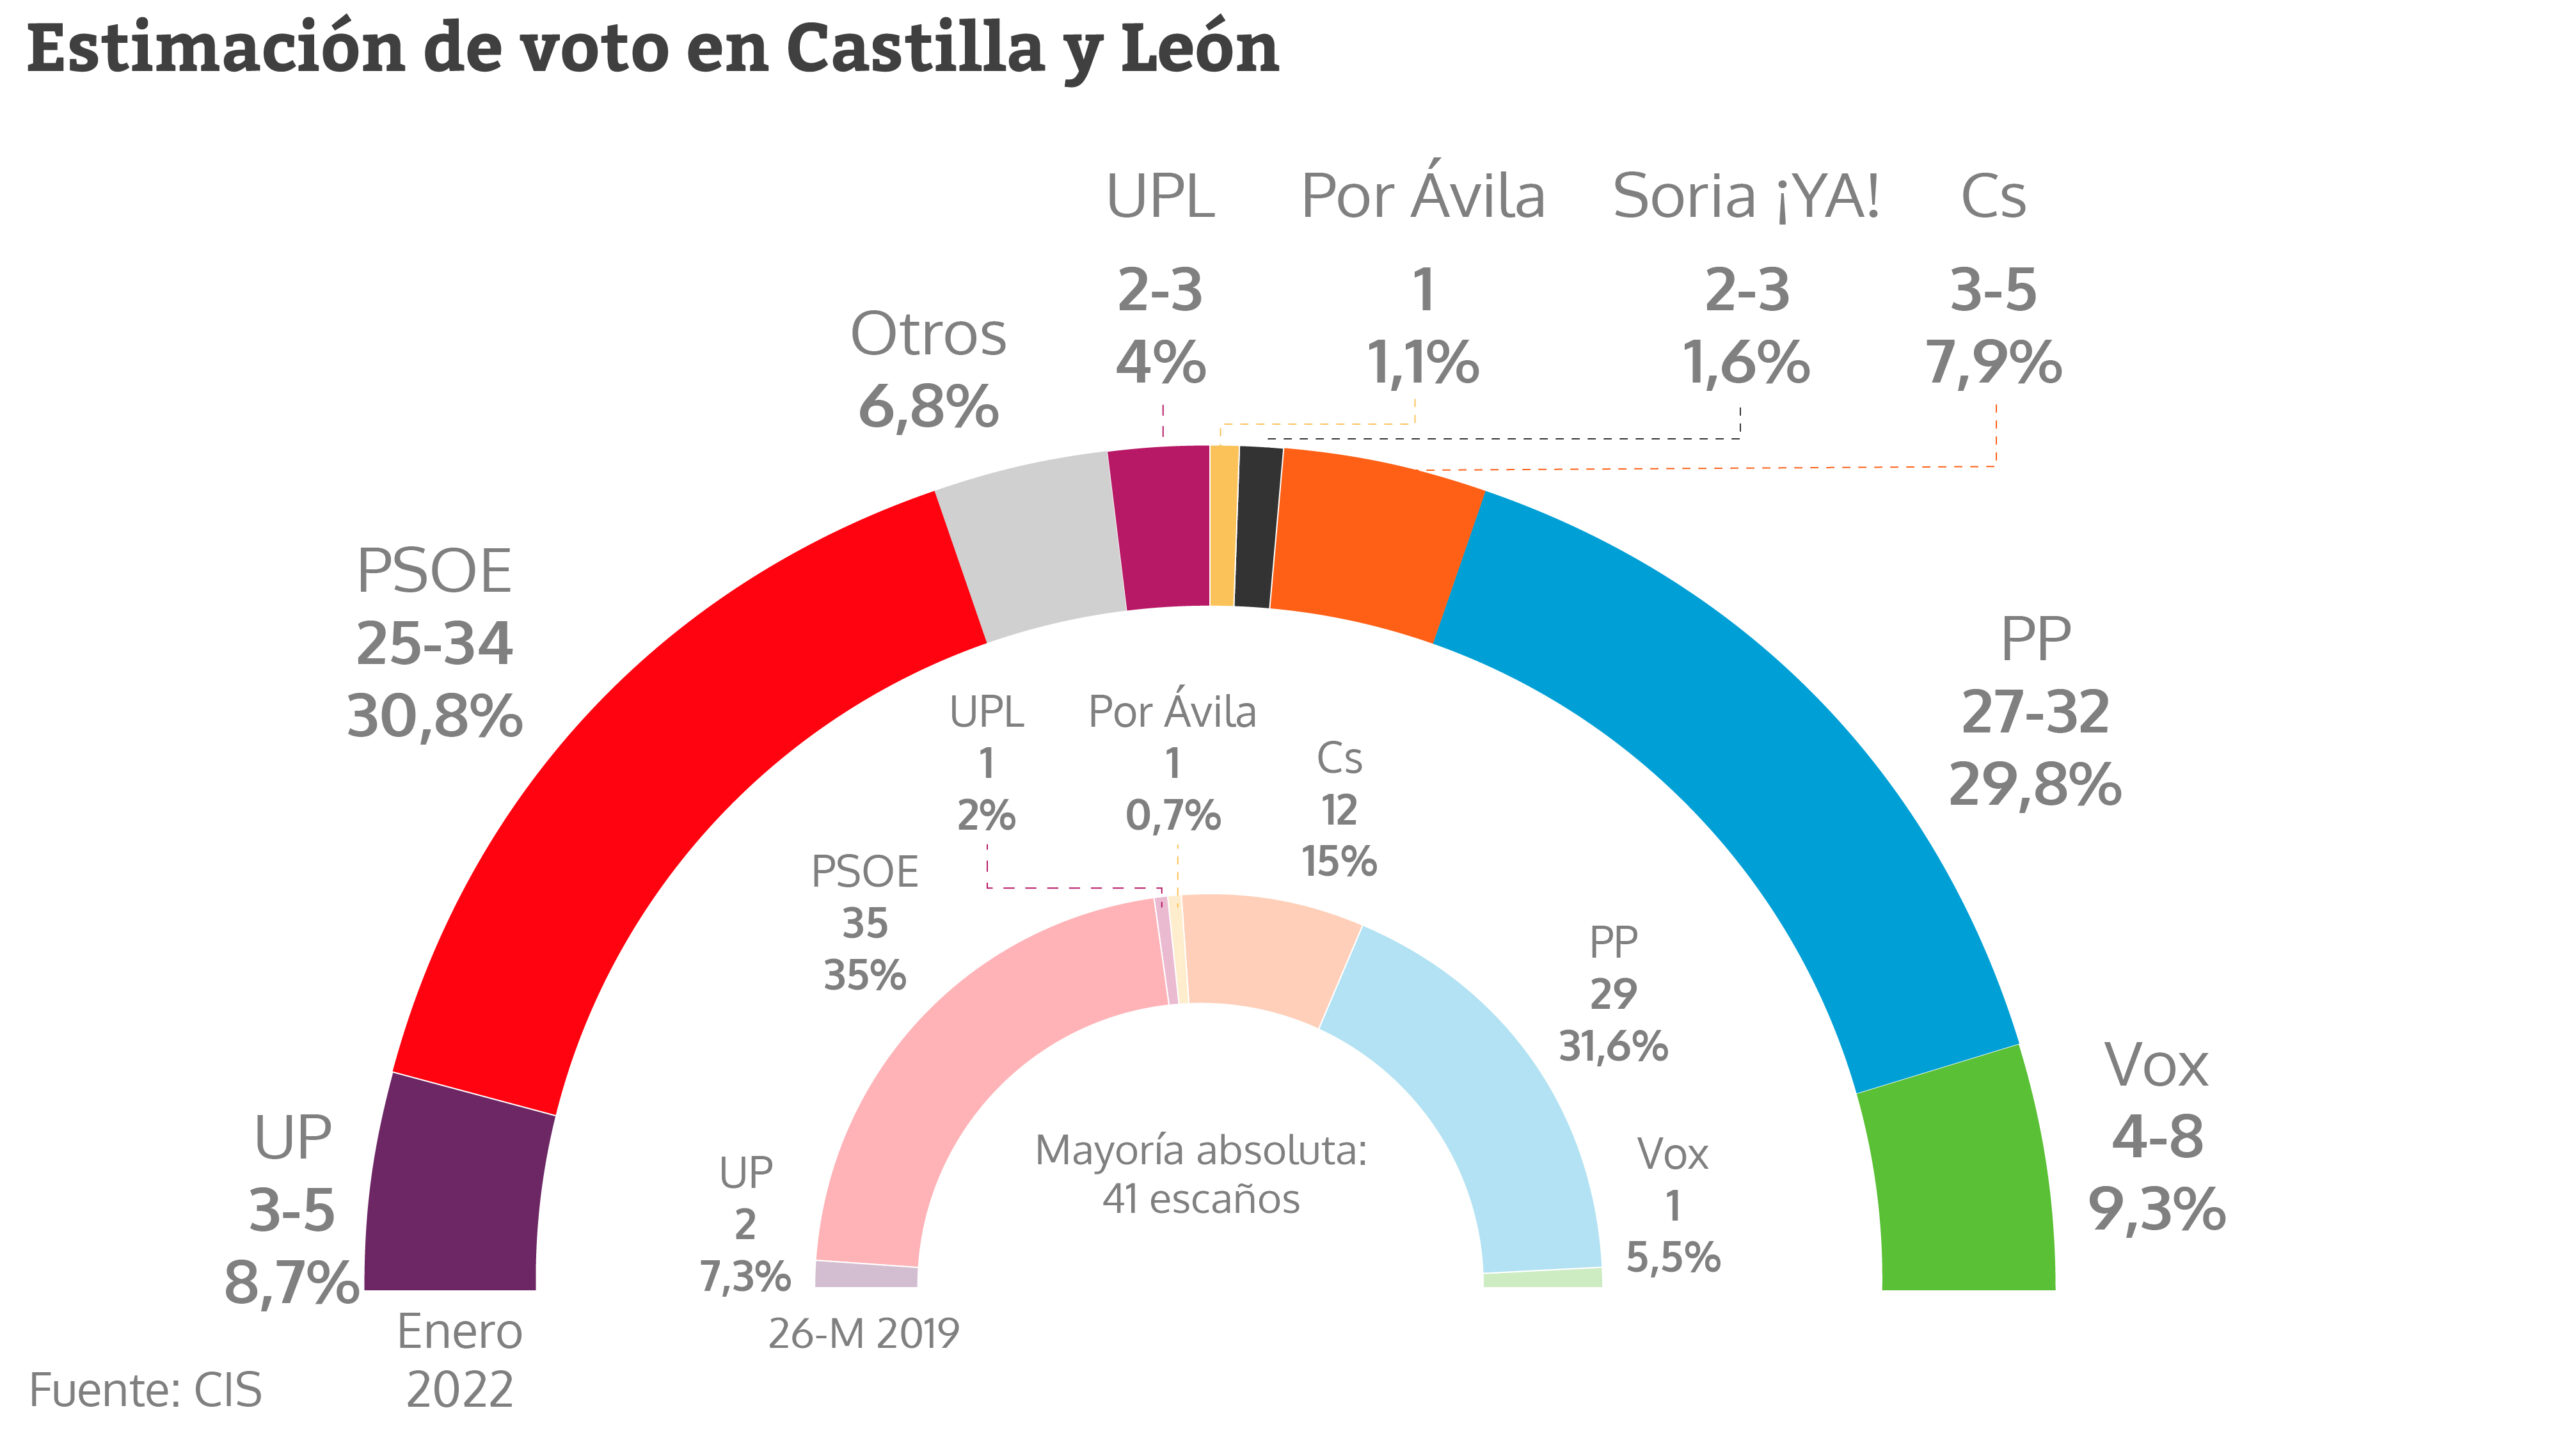 Estimación de voto en Castilla y León según el CIS de enero de 2022